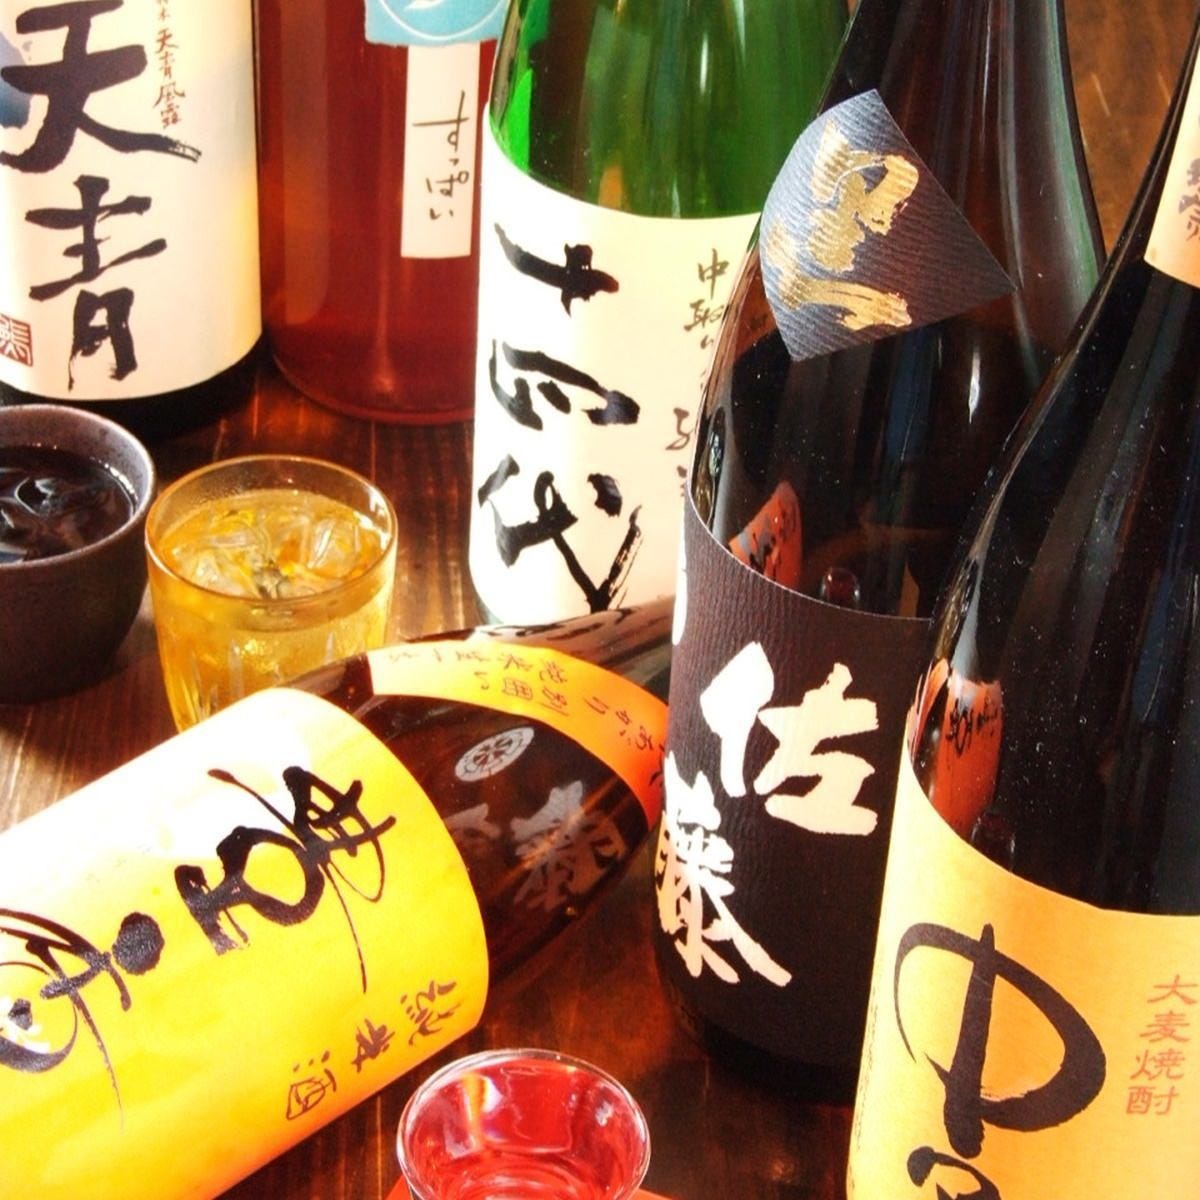 ビール、日本酒、果実酒、焼酎、ワイン等各種取り揃えております